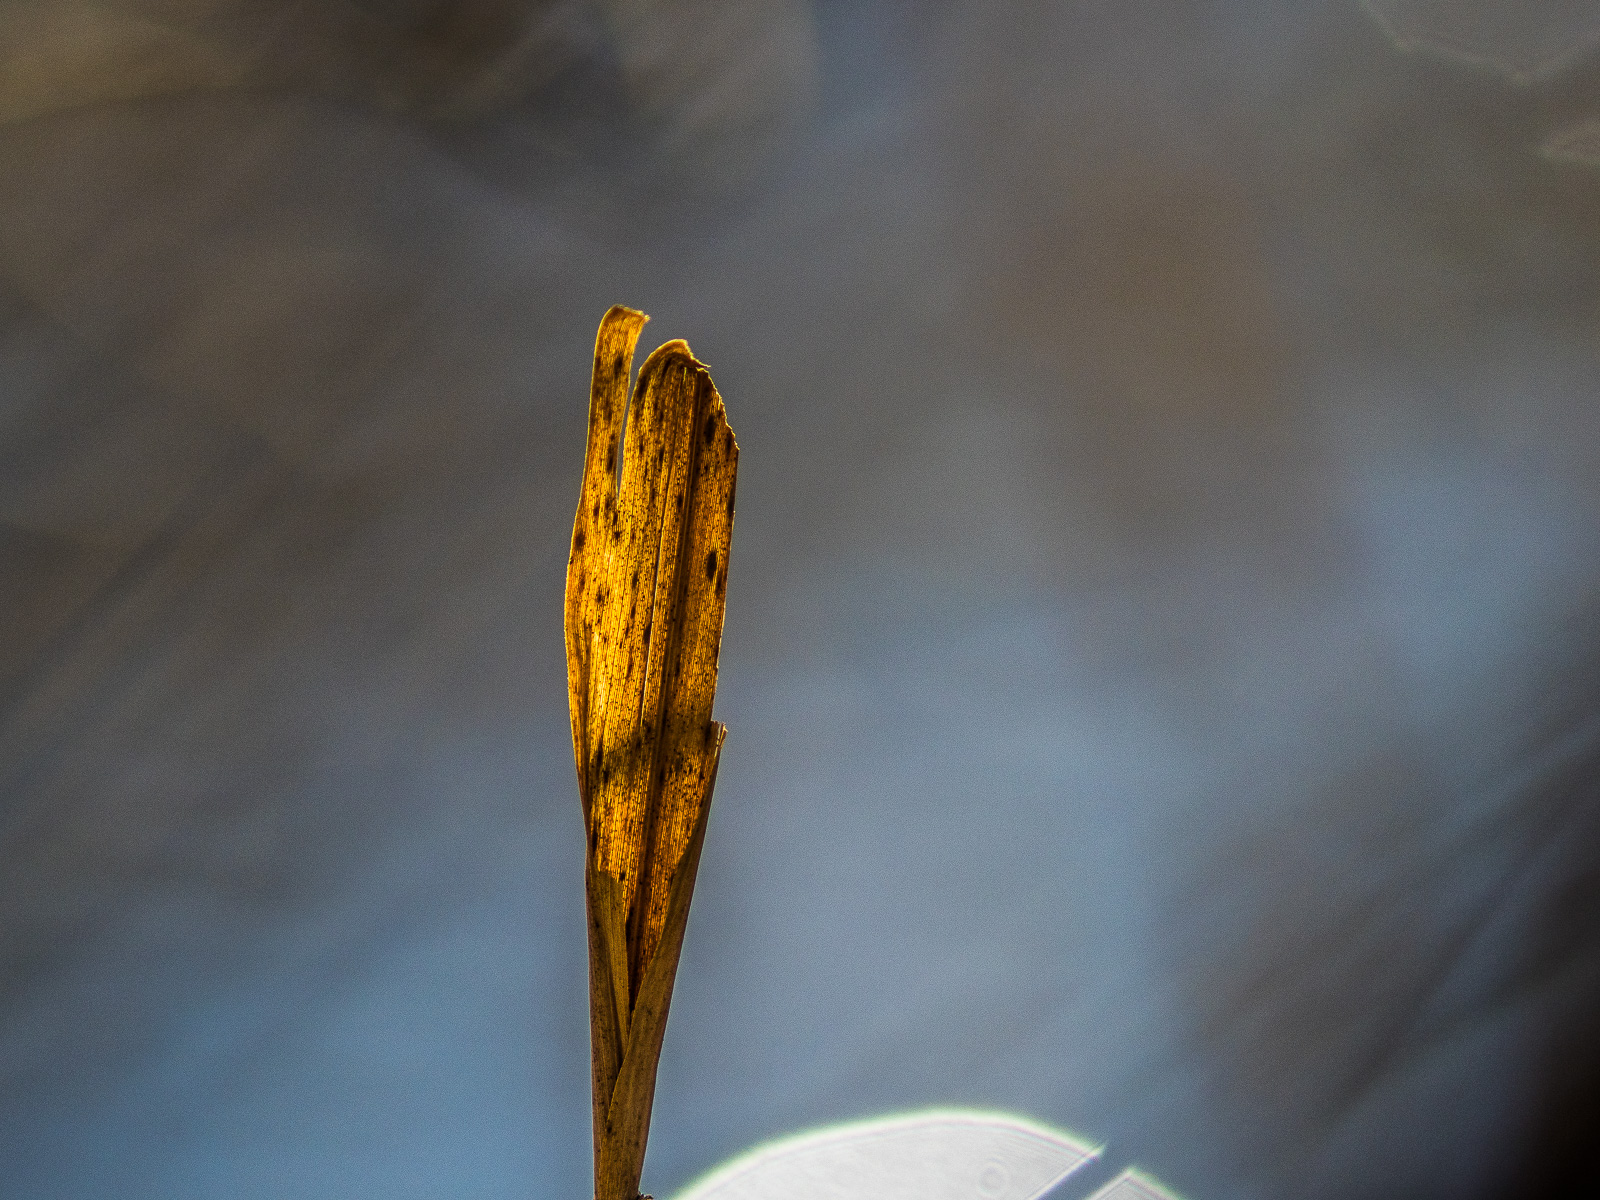 Ein trockenes Schilfgrasblatt im Gegenlicht vor dem Hintergrund einer Wasseroberfläche, am unteren Rand in großer Lichtreflex